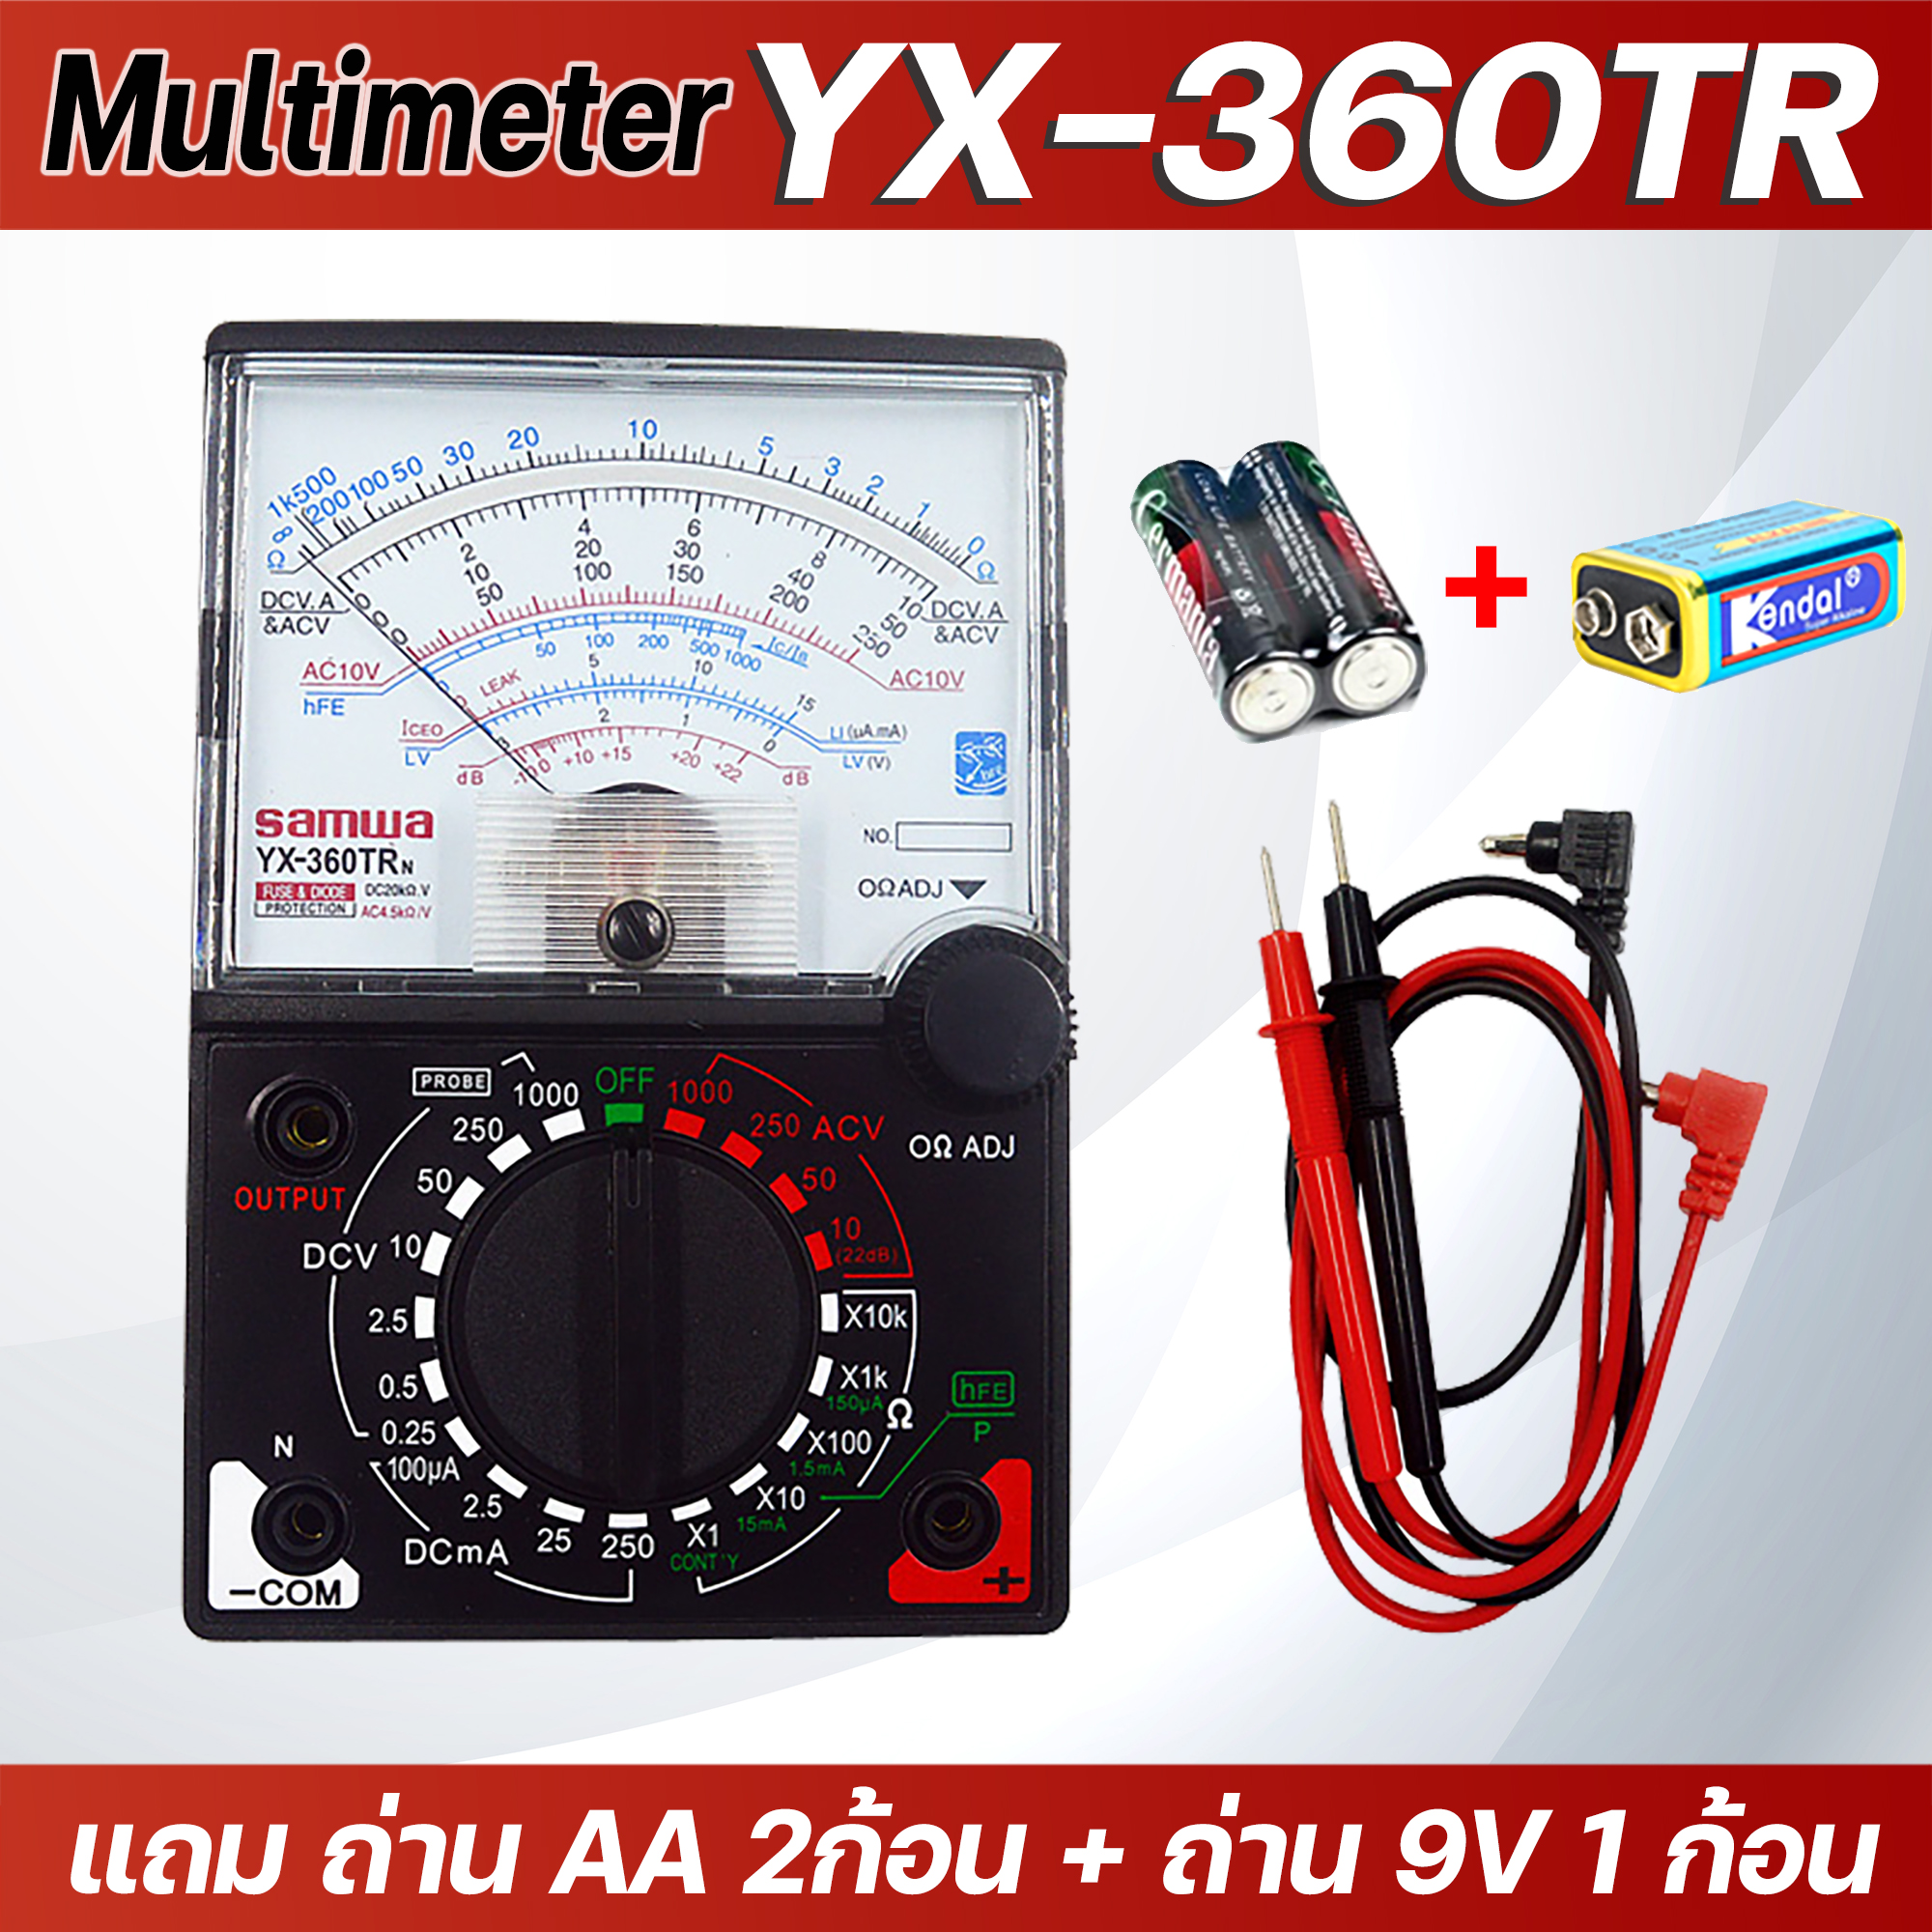 มิเตอร์วัดไฟ แบบเข็ม รุ่น sunma sanwai Multimeter YX-360TR แถม ถ่าน AA 2ก้อน + ถ่าน 9V 1 ก้อน